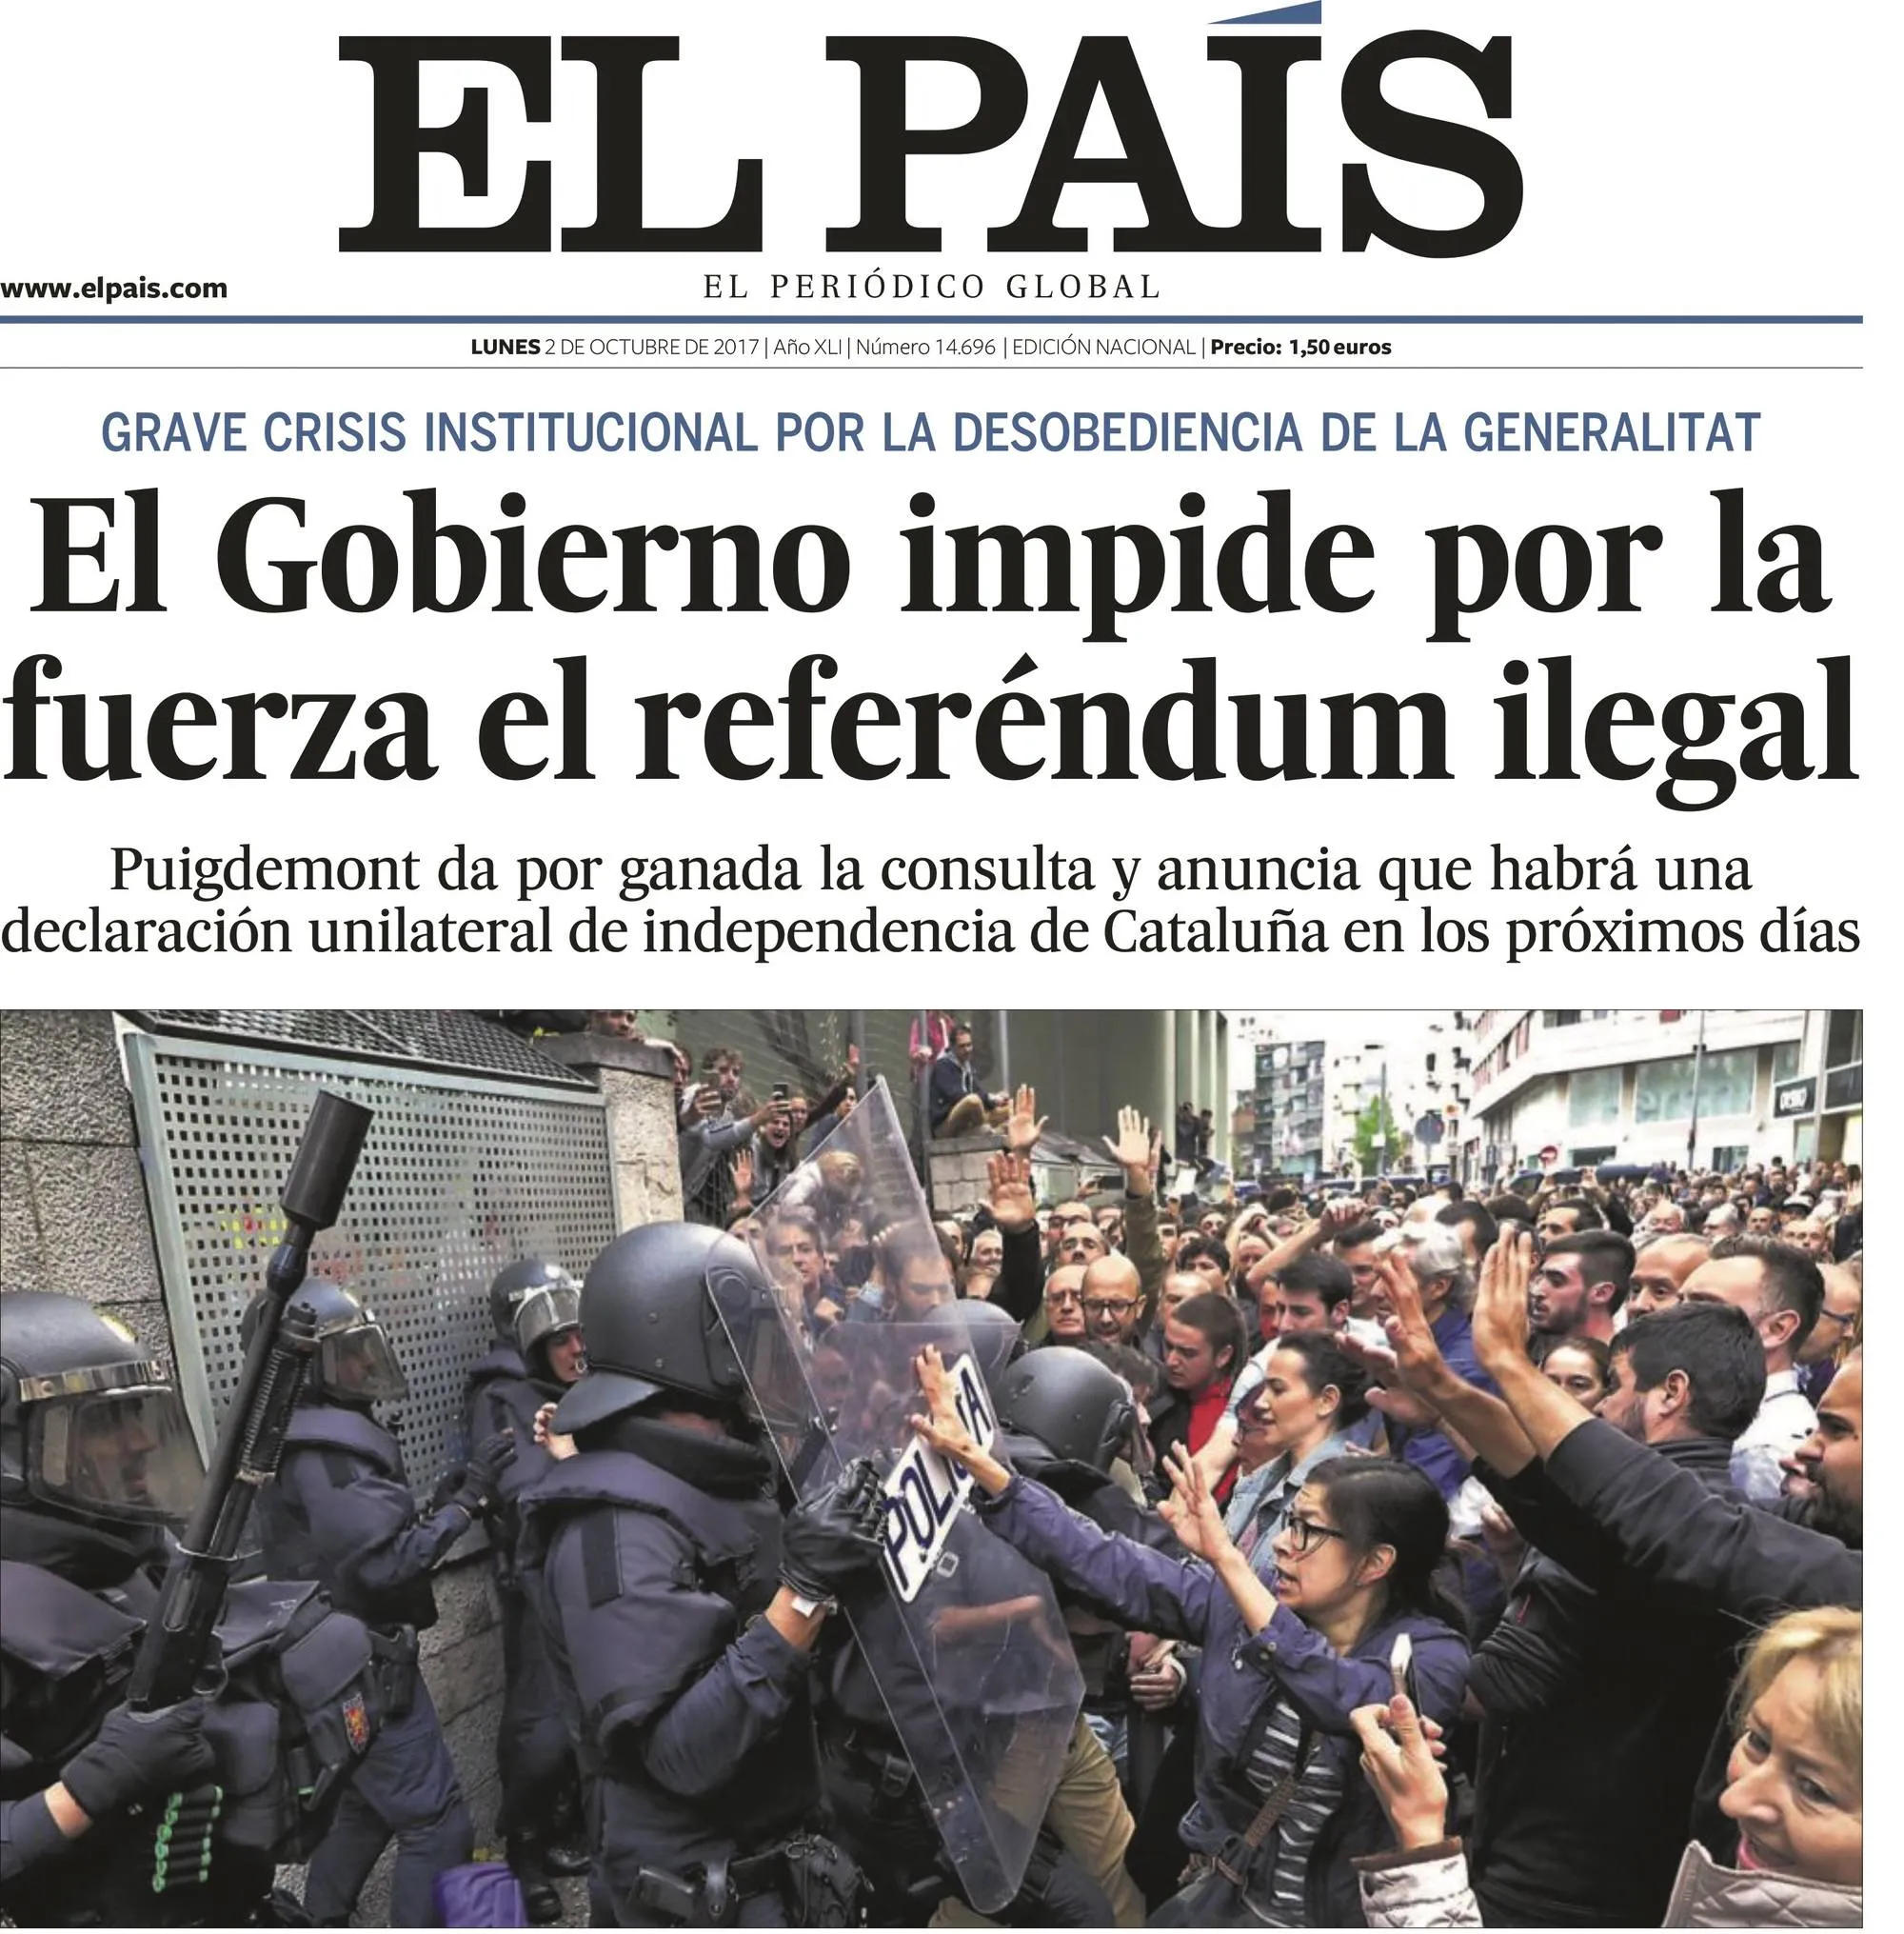 Portada del periódico El País, 02/10/2017.